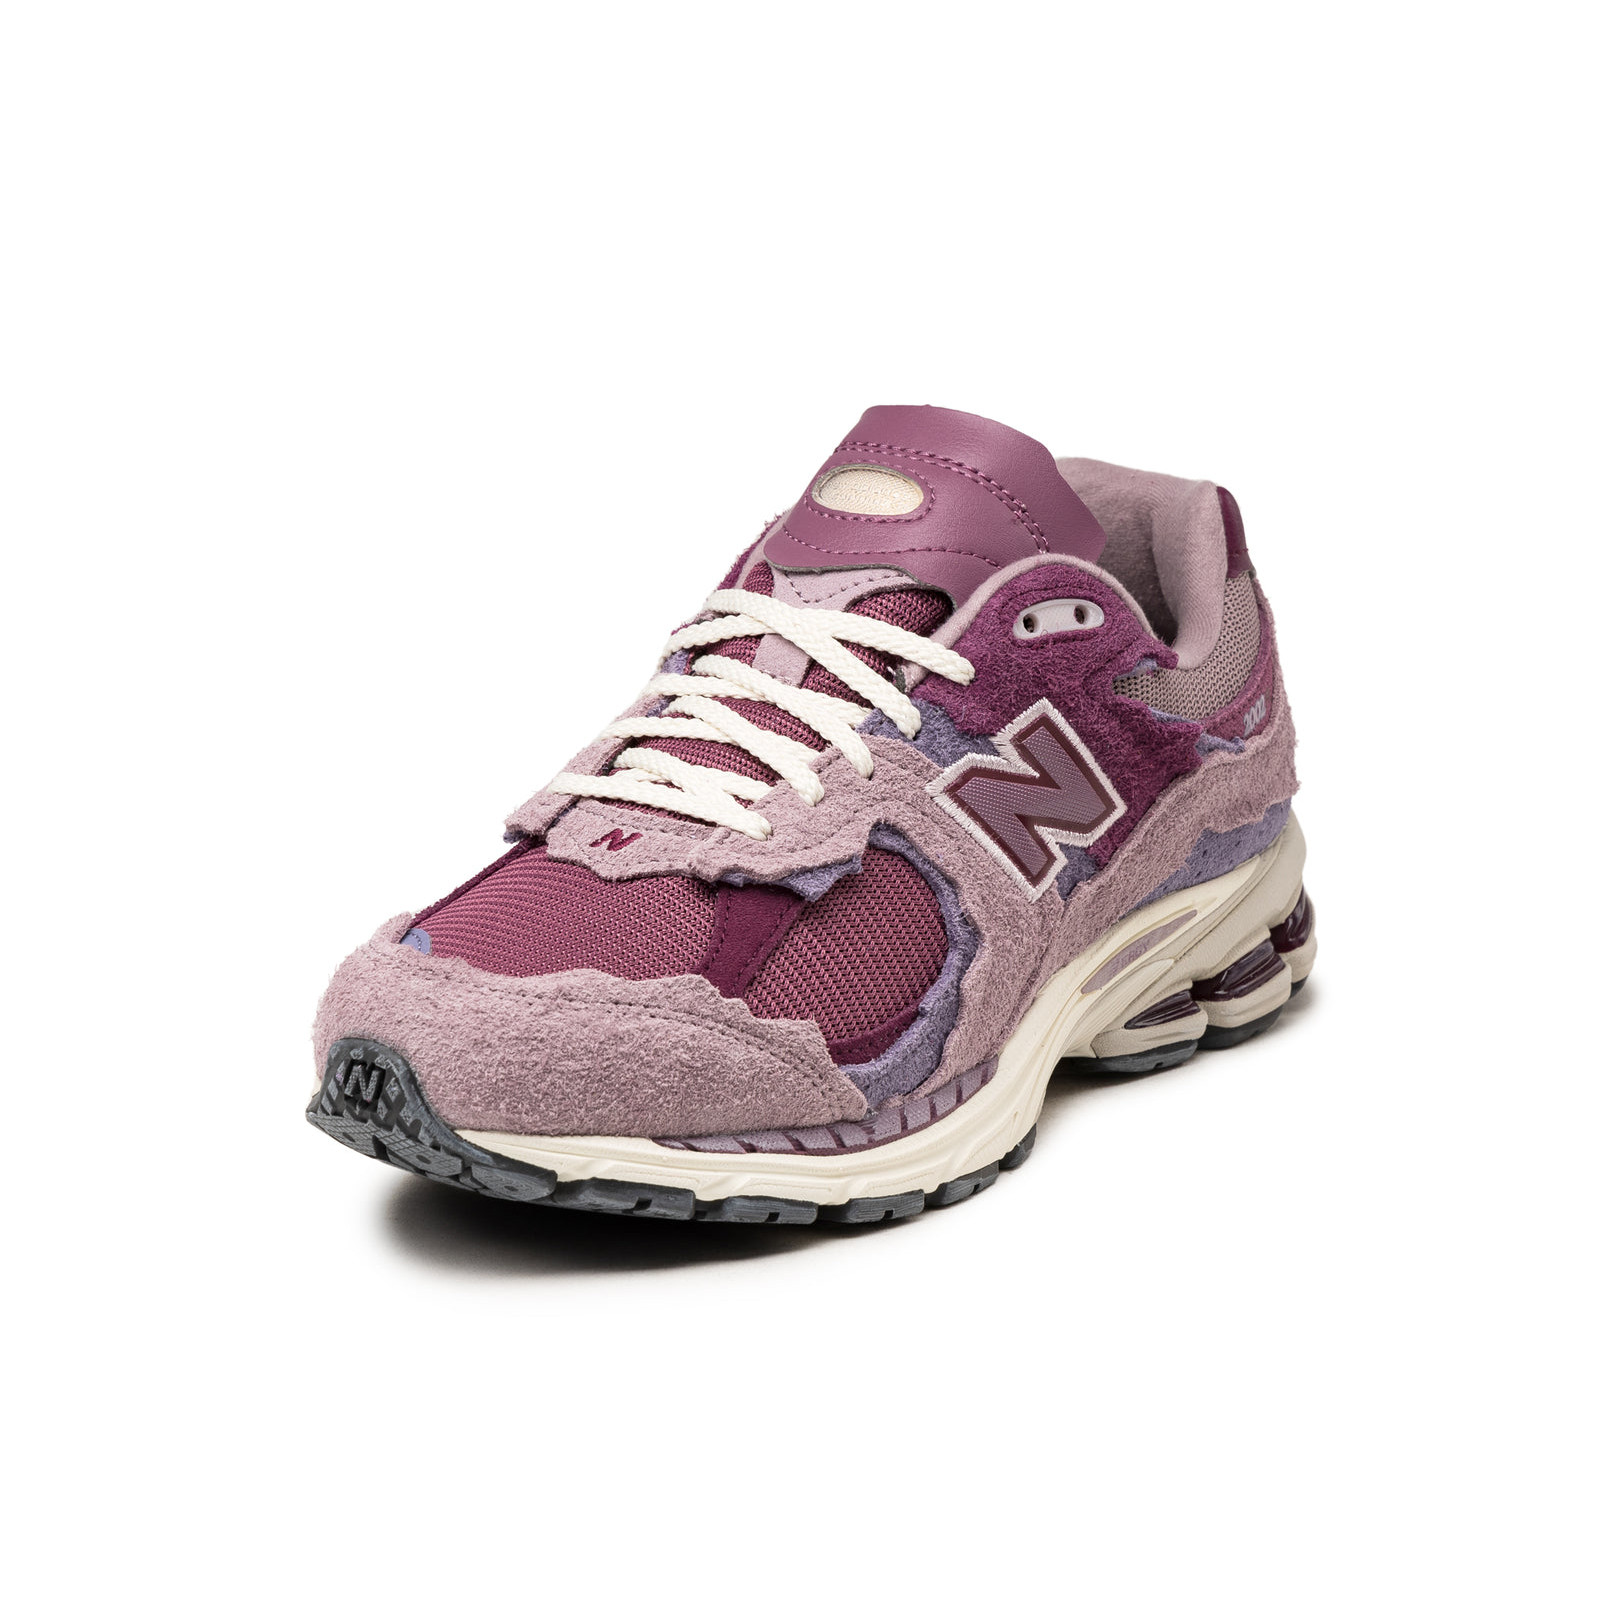 New Balance 2002R
Pink / Violet